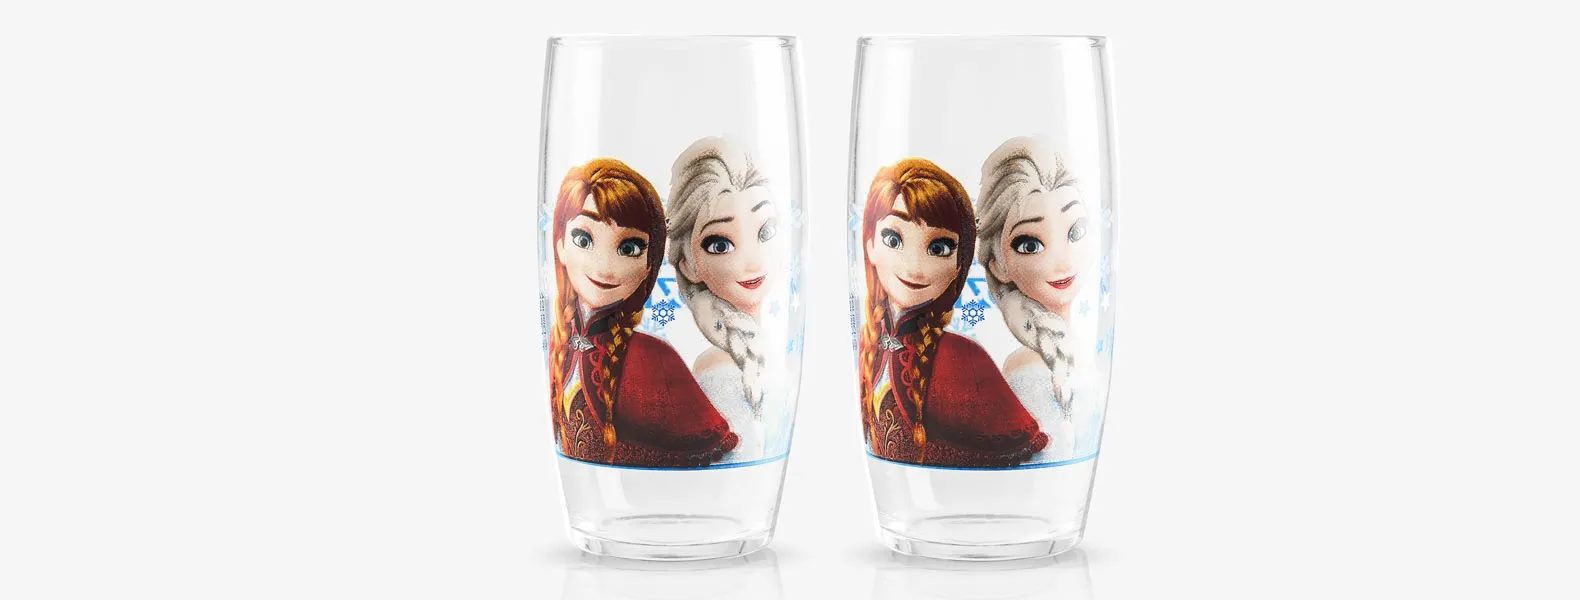 Jogo de copos personalizados com dois copos Frozen em vidro e embalagem.